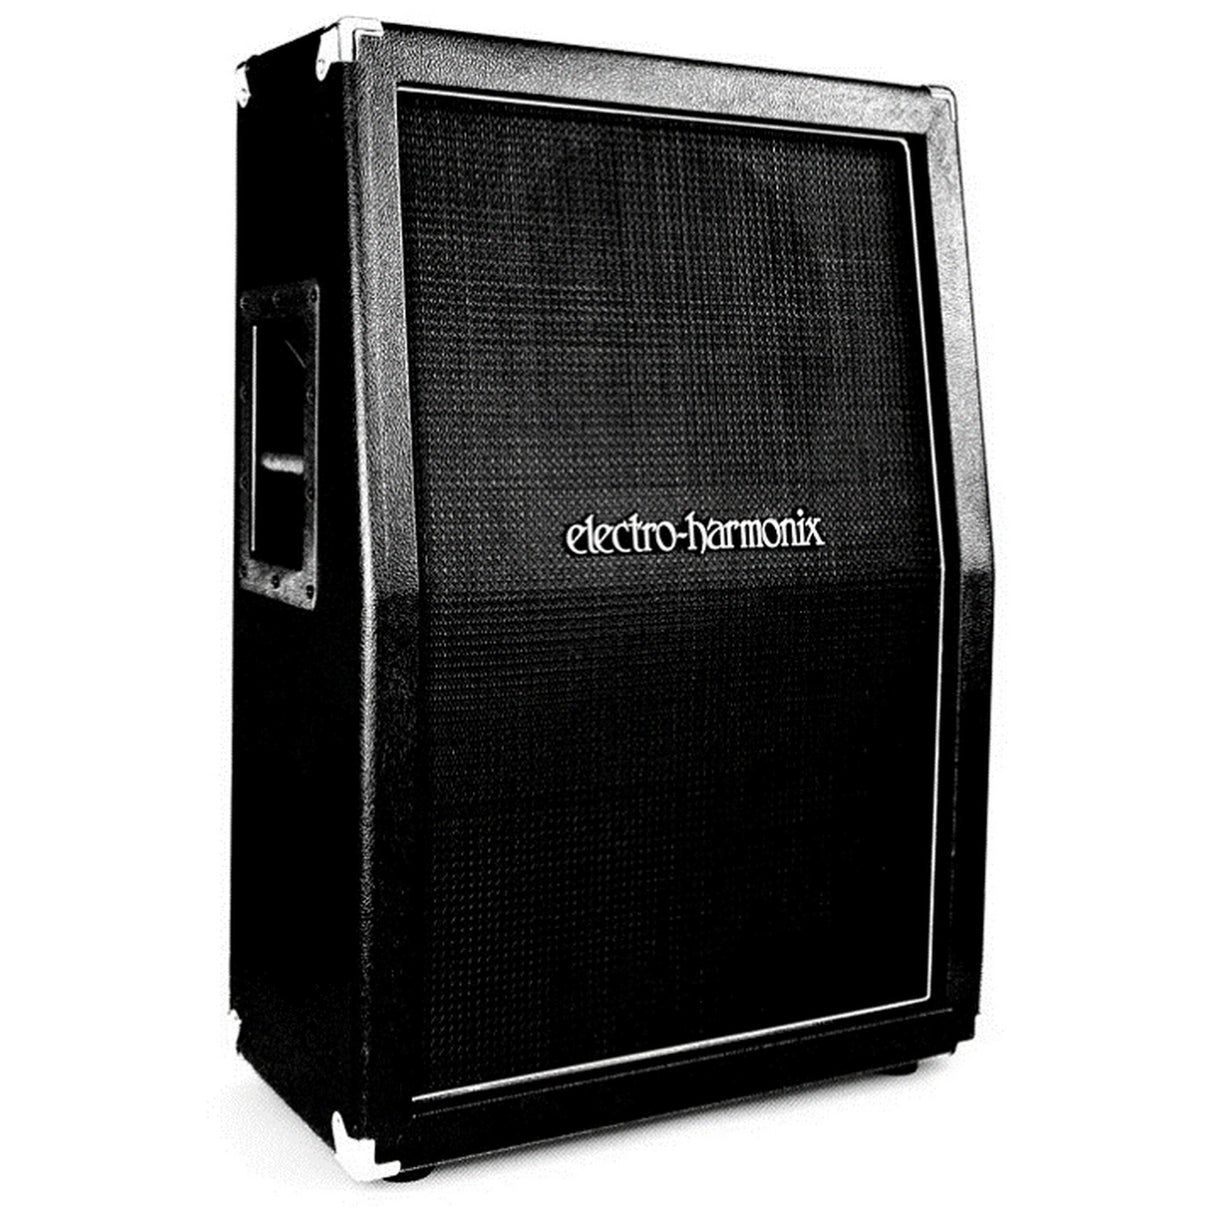 Electro-Harmonix 2 x 12 Inch Speaker Cabinet